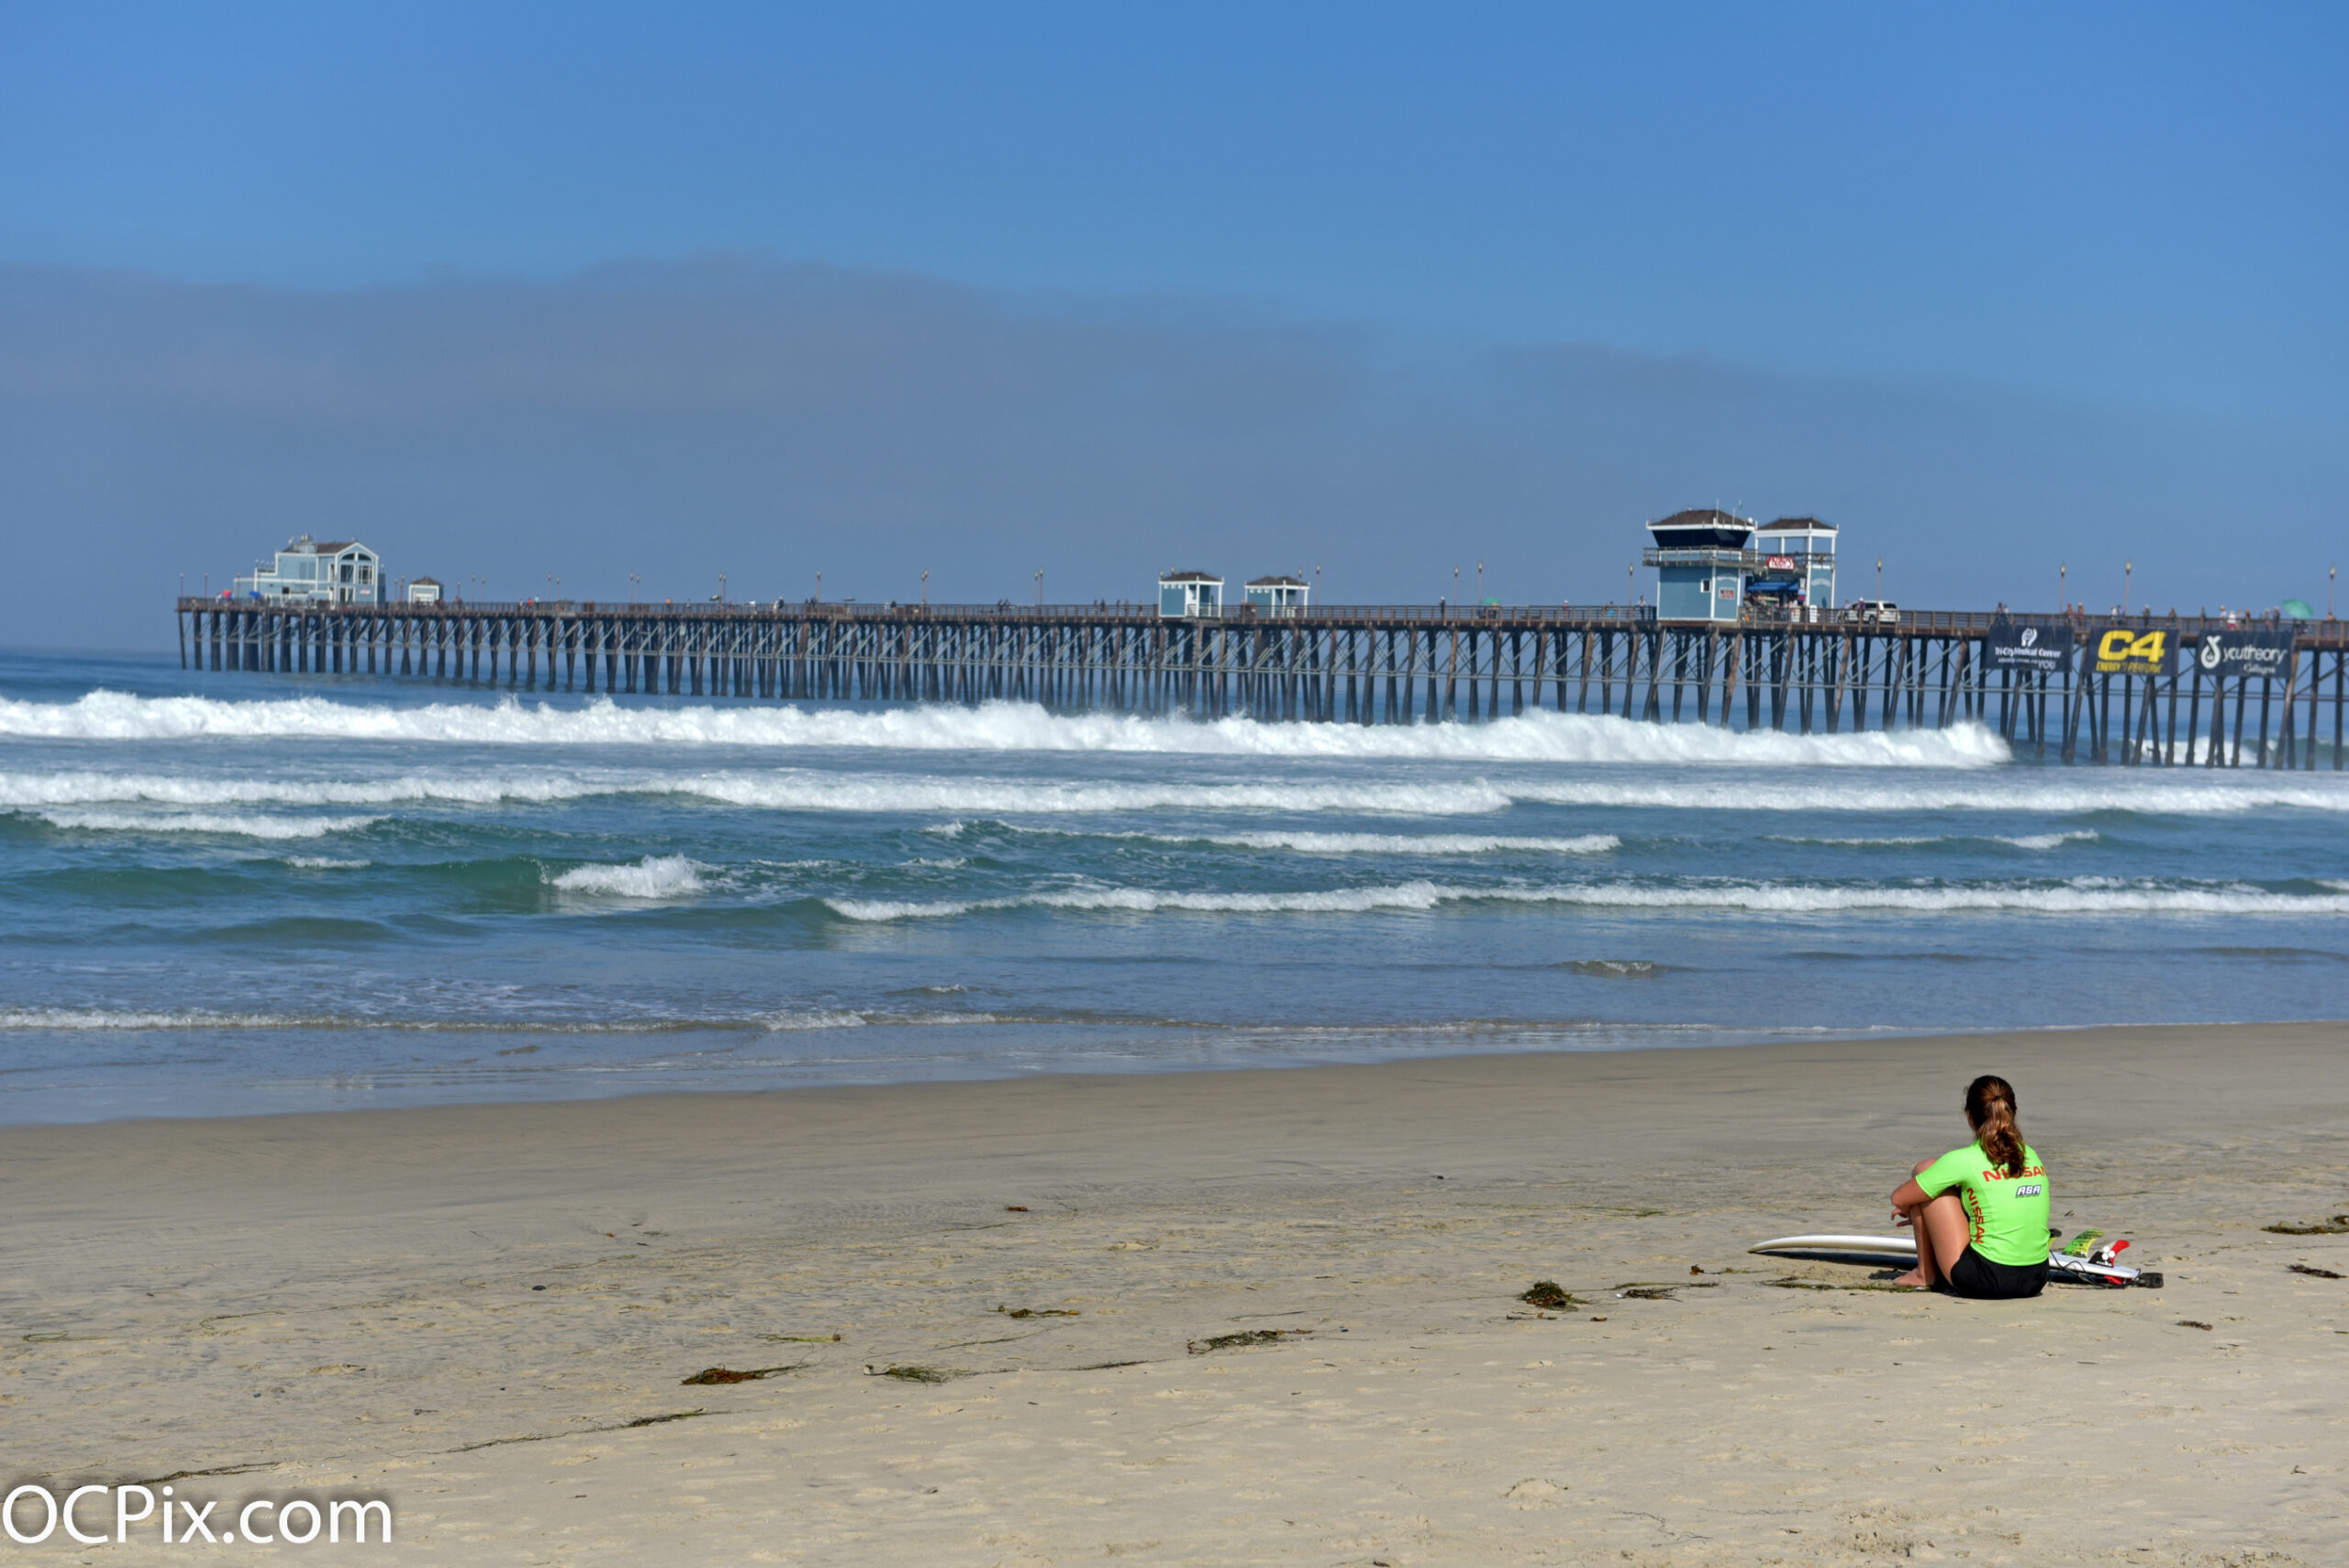 Nissan Super Girl Surf Pro Is Back October 3-4 At Iconic Oceanside Pier